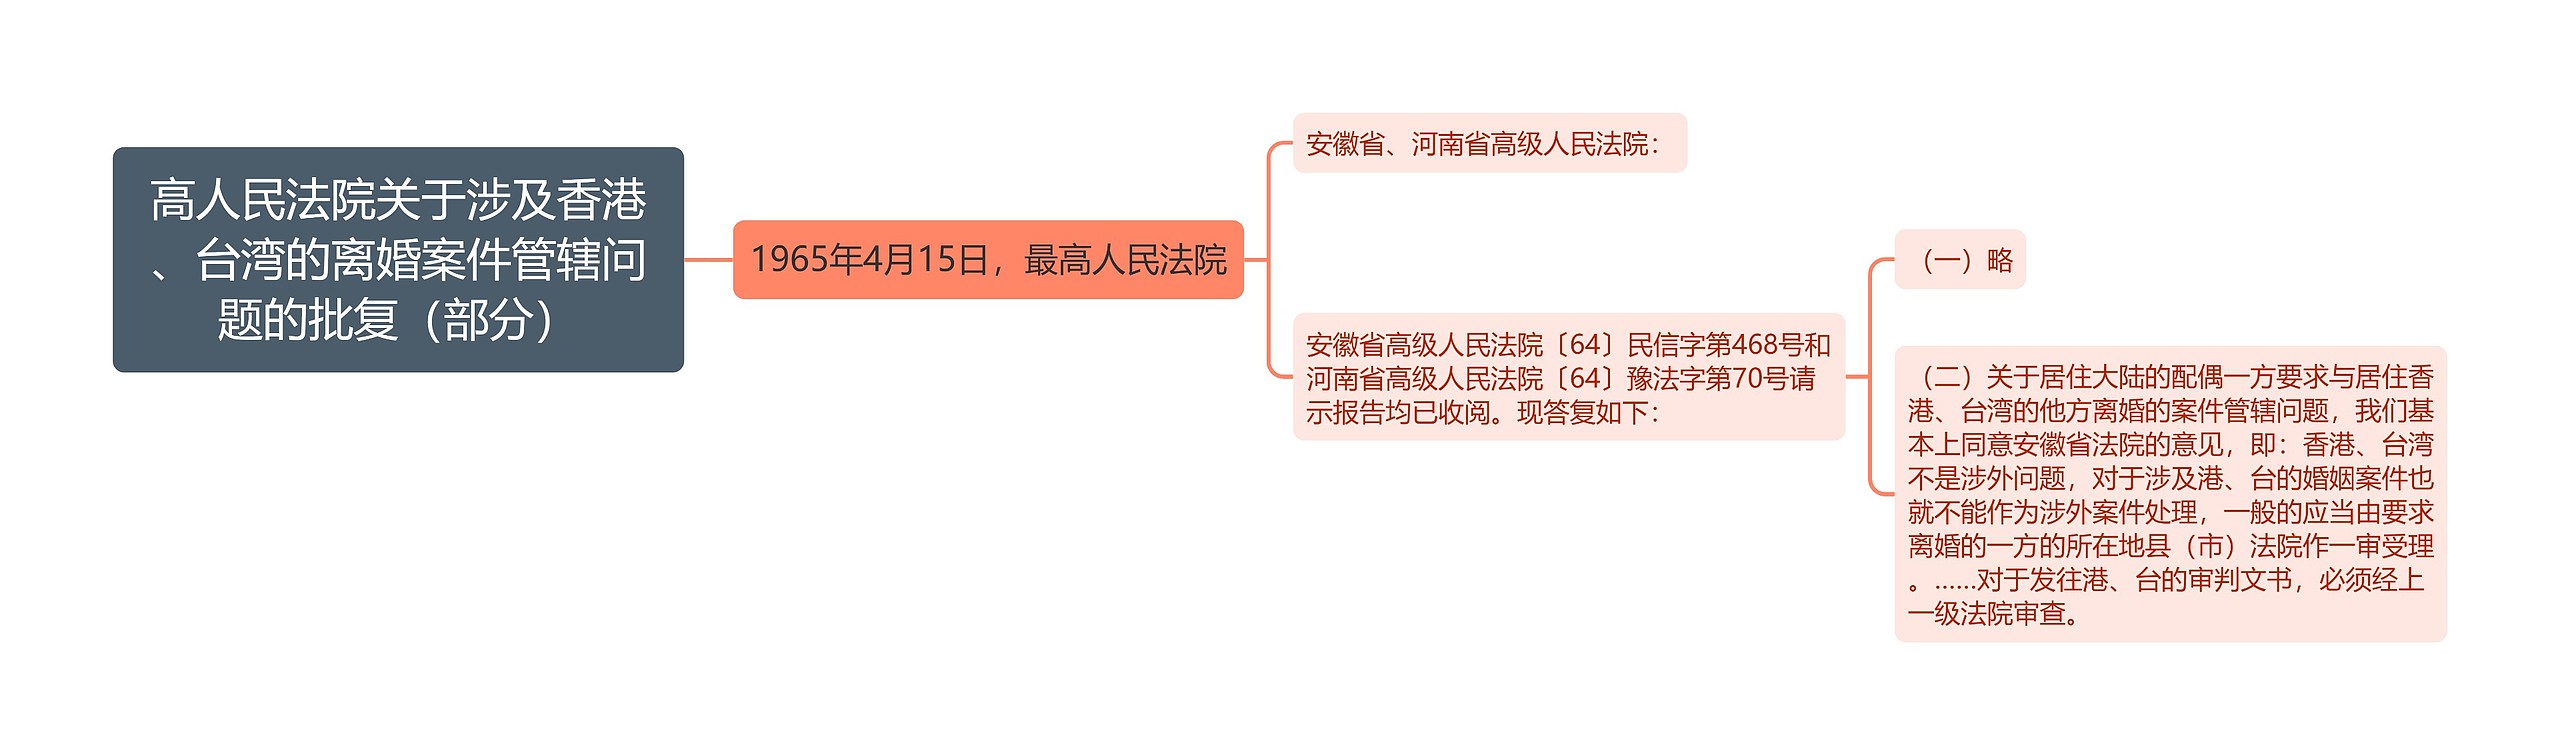 高人民法院关于涉及香港、台湾的离婚案件管辖问题的批复（部分）思维导图